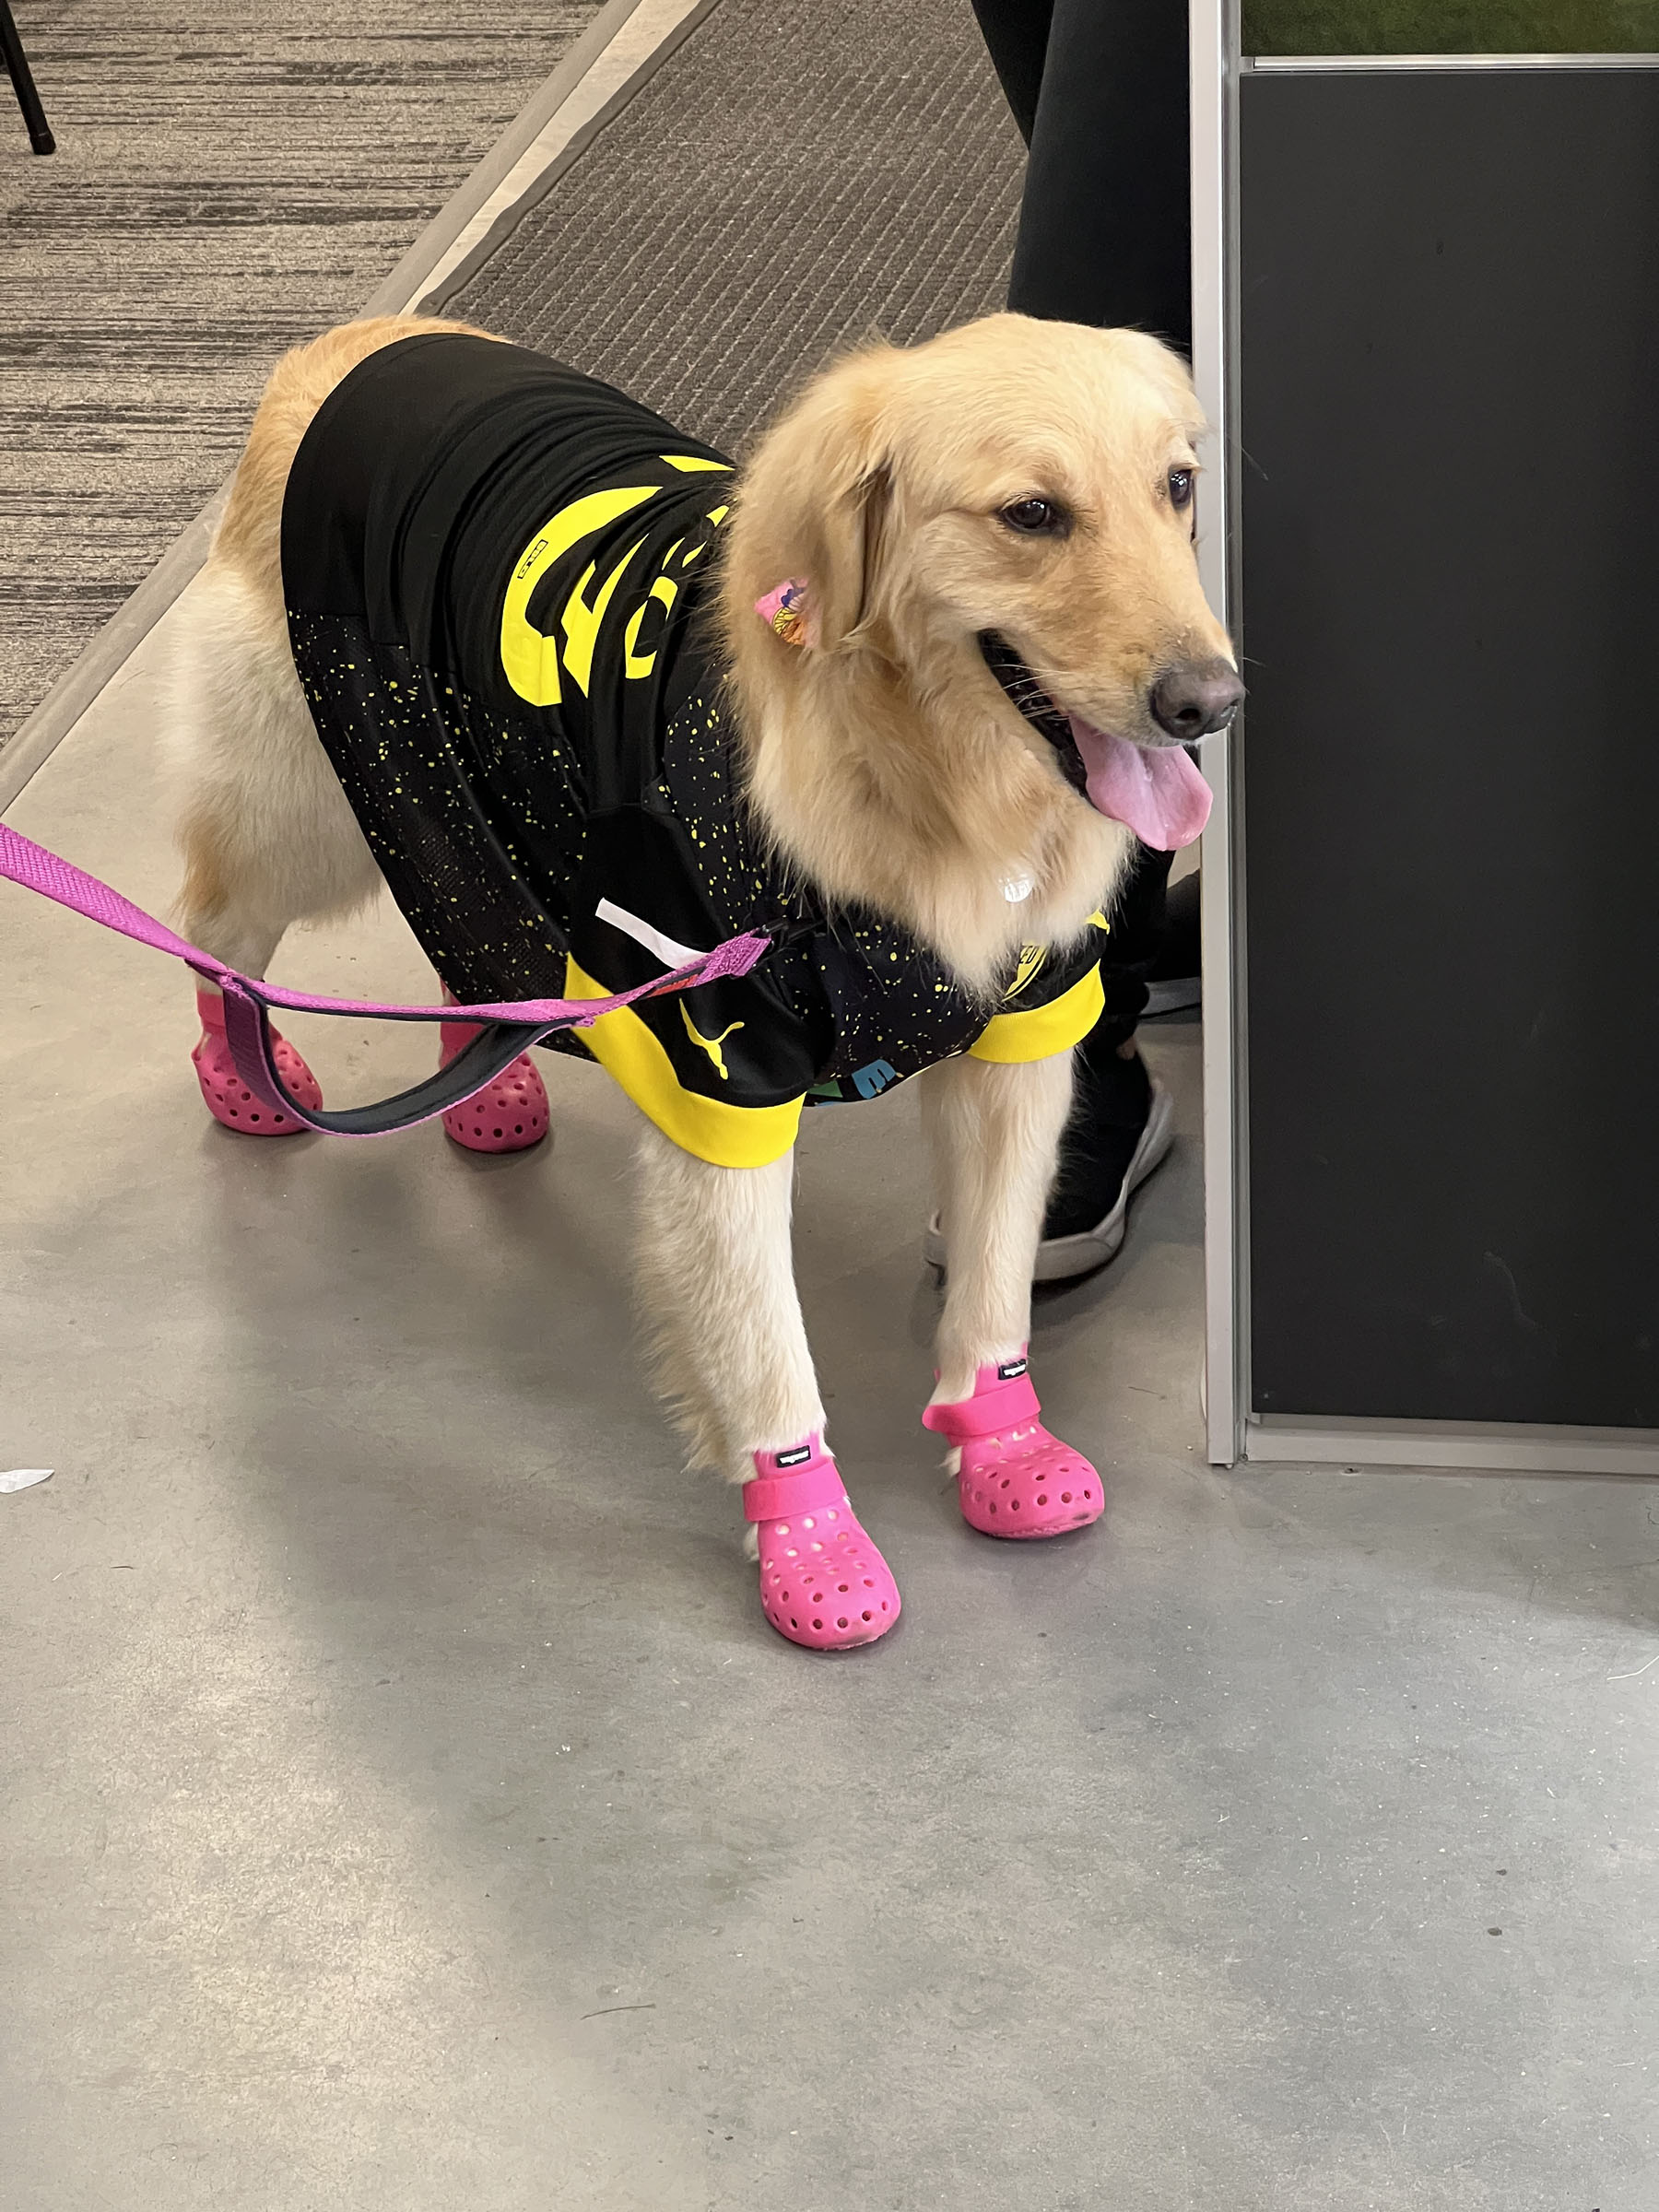 الكلب شوكو مختبر ذهبي يرتدي قميص أسود وكروكس وردي